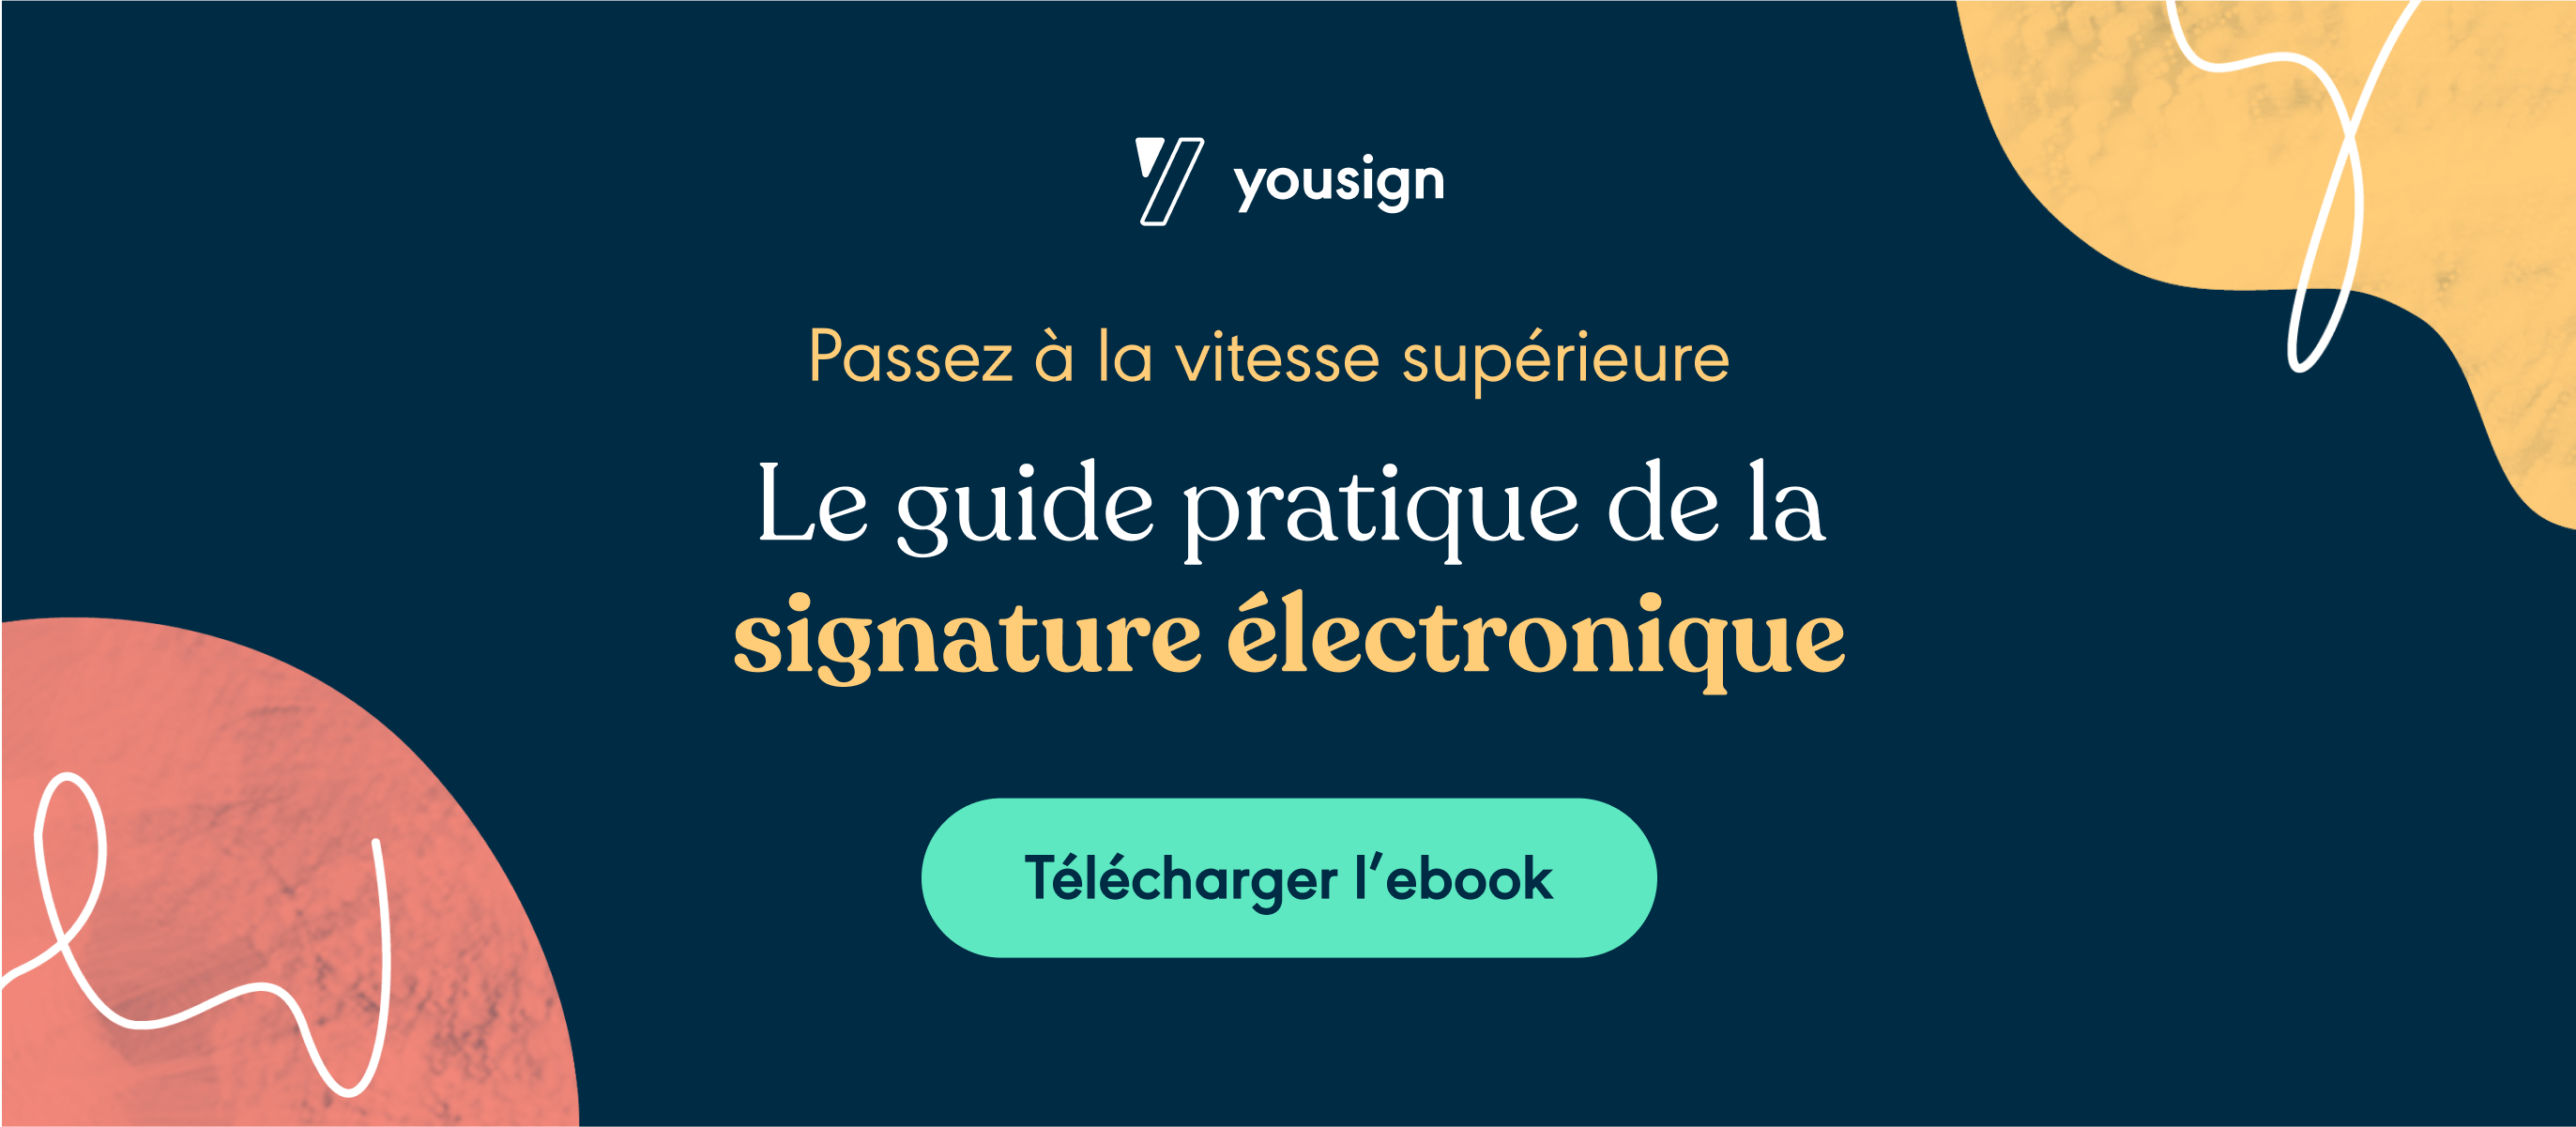 Guide signature électronique ebook